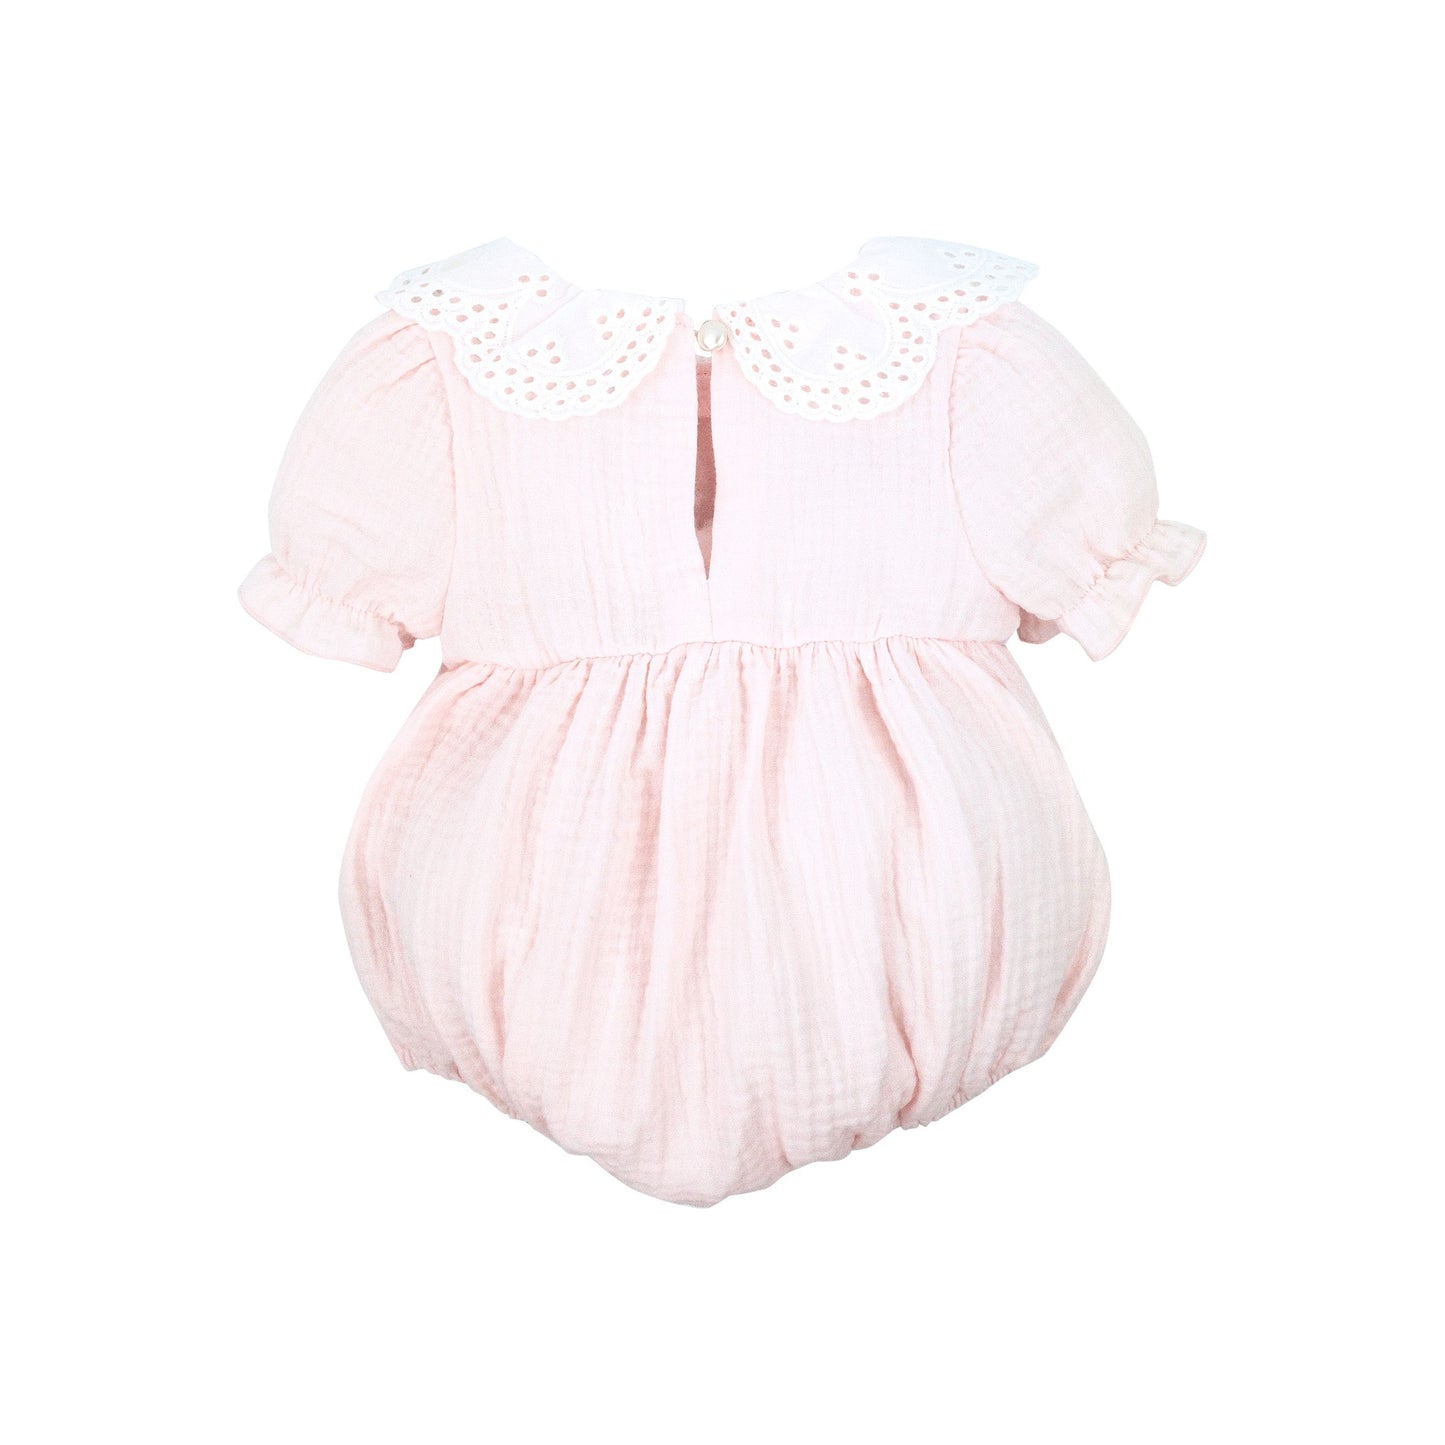 Baby girls pink cotton romper by Jamiks - Adora Childrenswear 